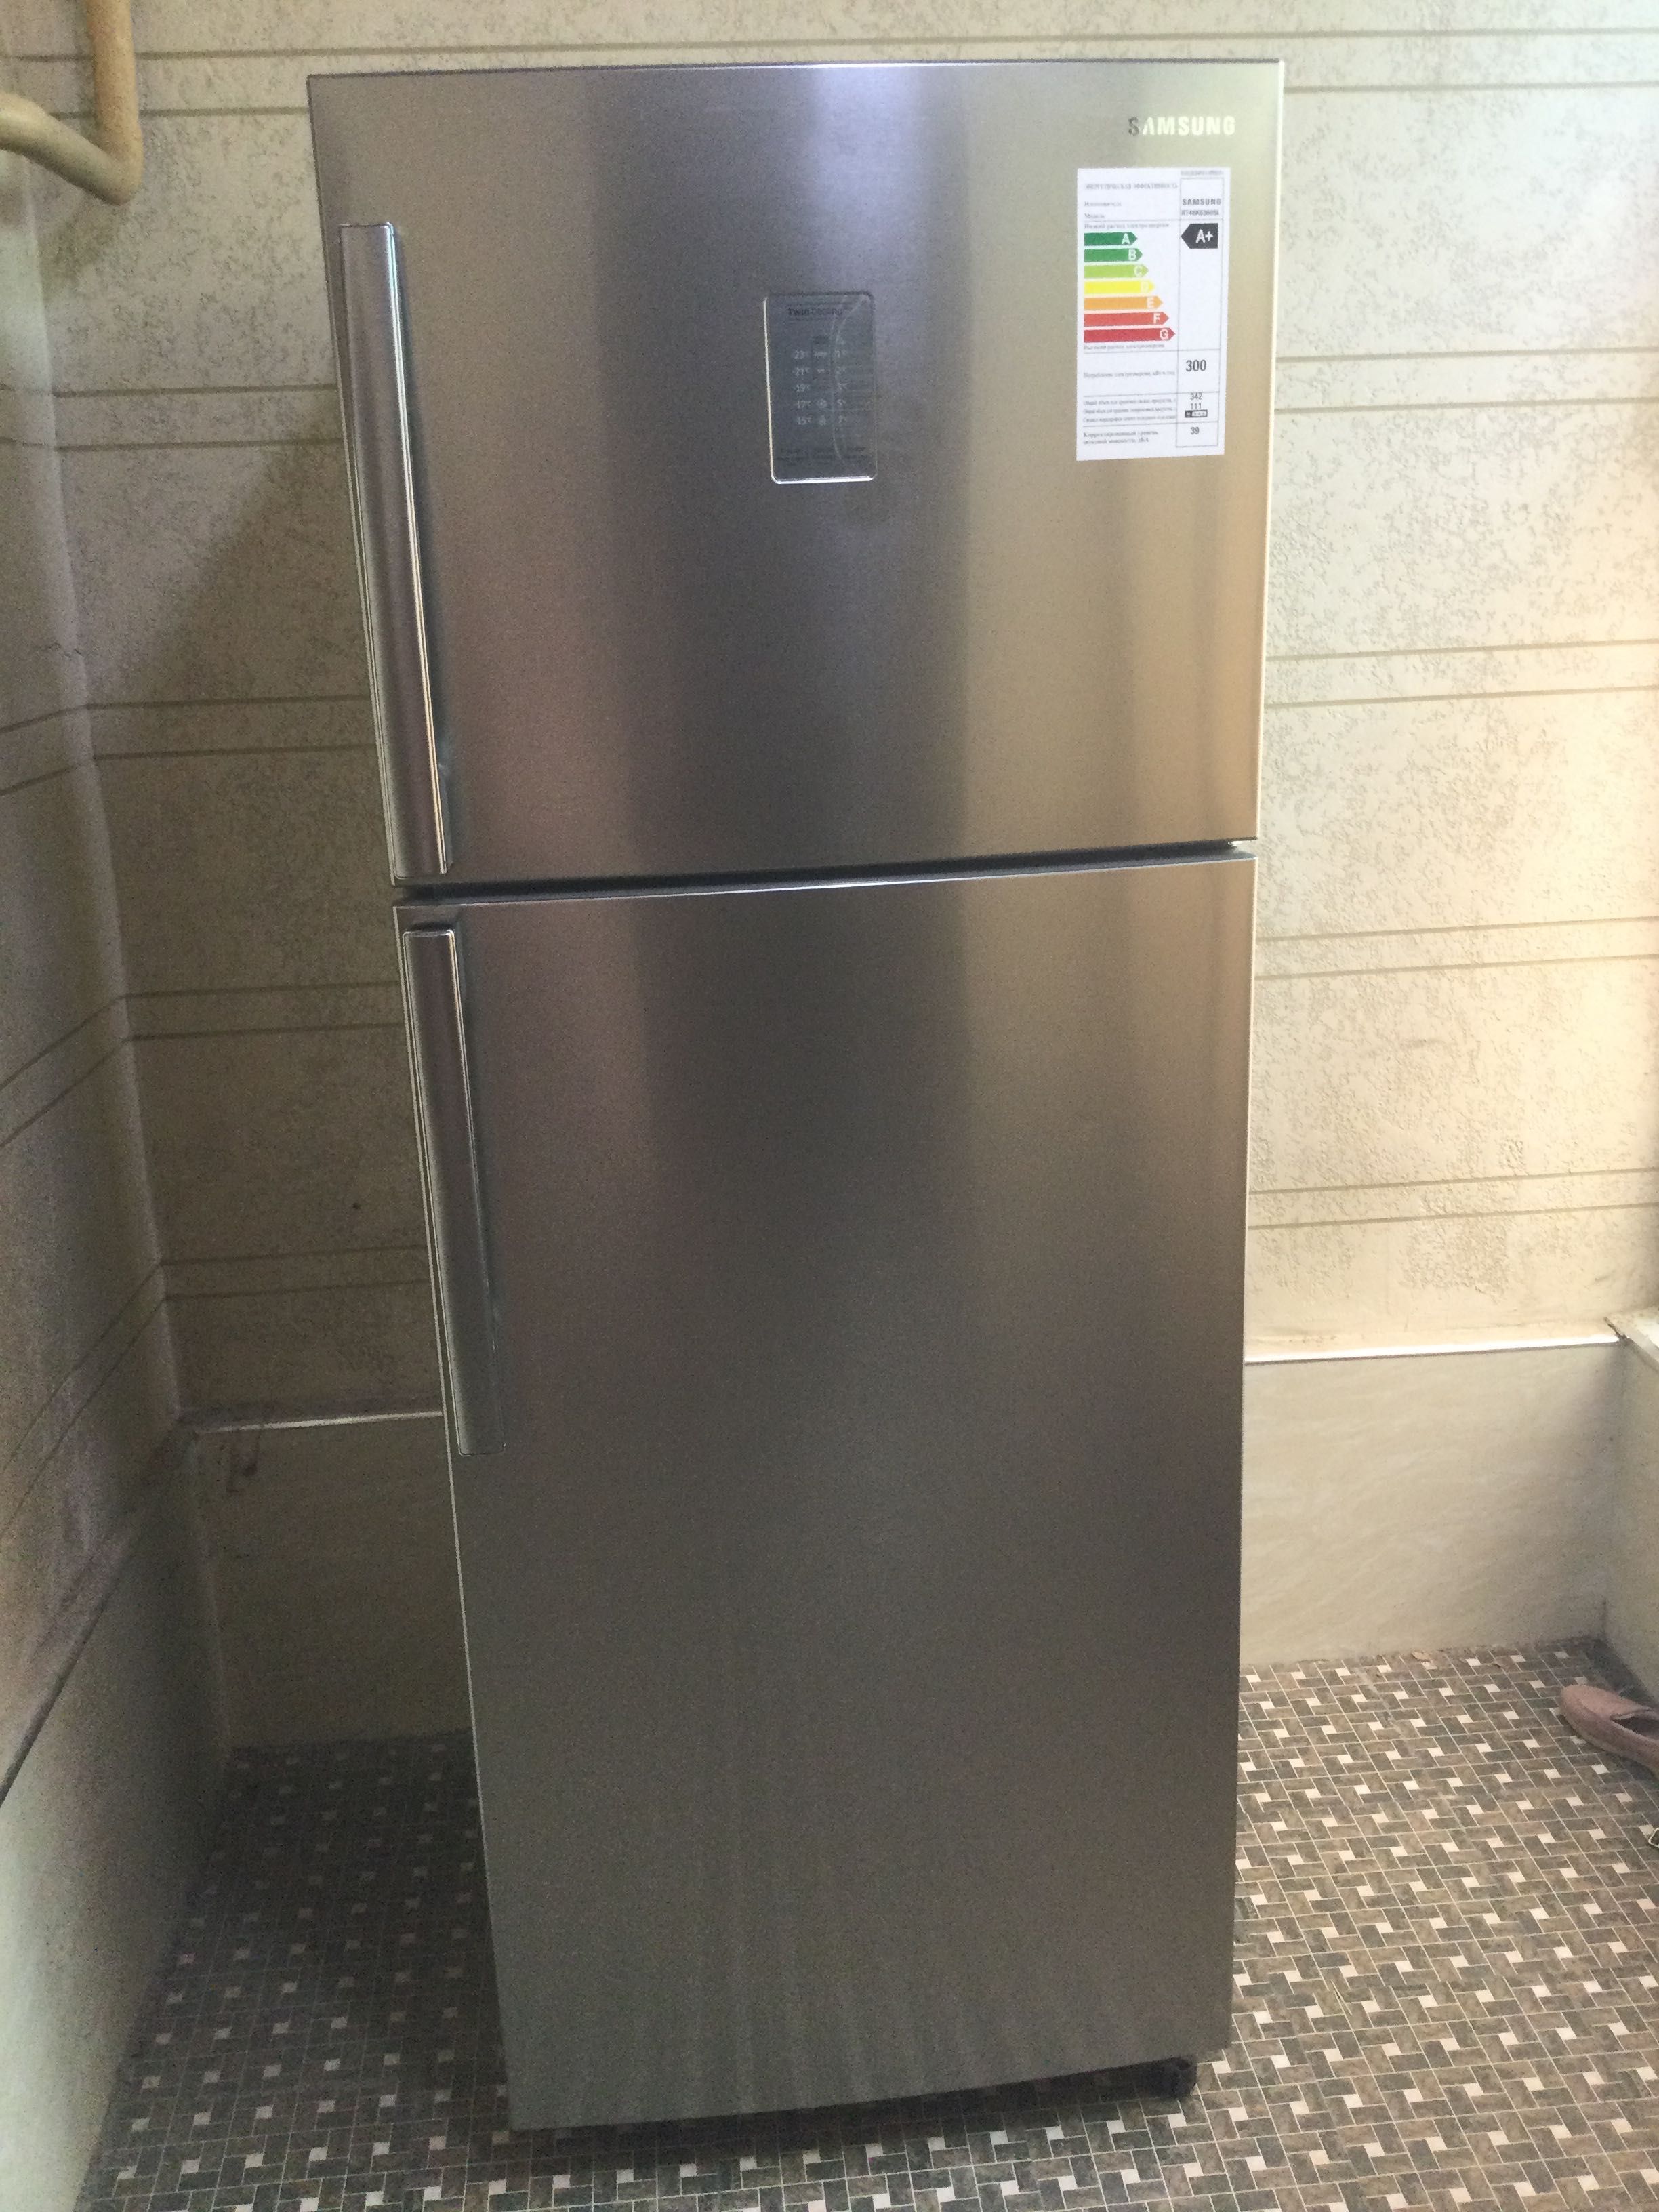 Холодильник Samsung RT46K6360SL